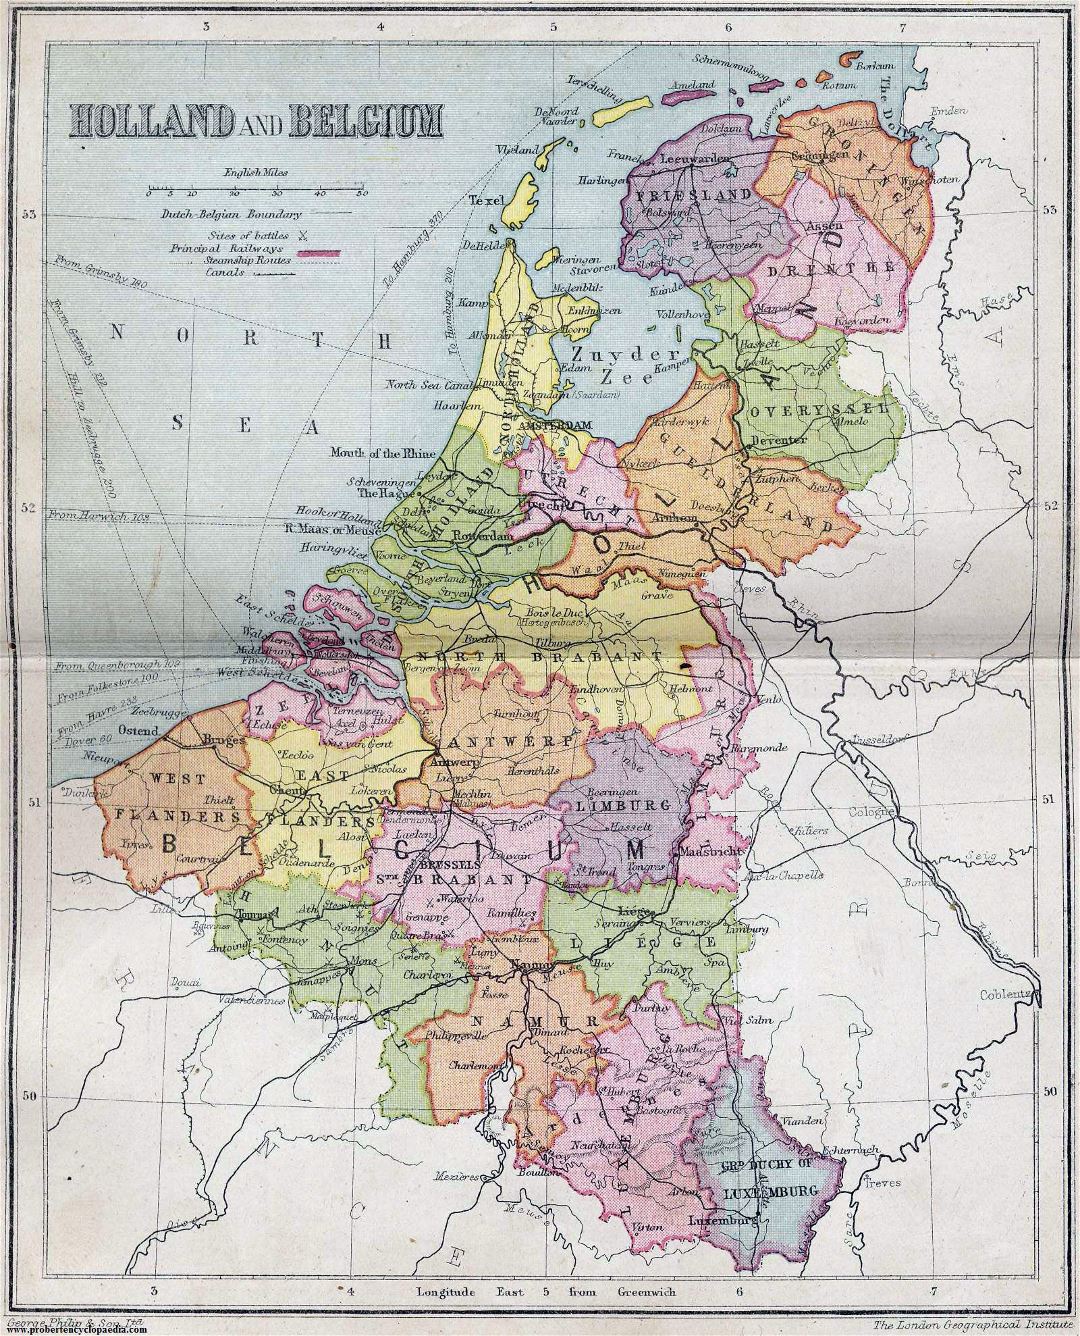 Grande detallado mapa político y administrativo antiguo de Holanda y Bélgica - 1911